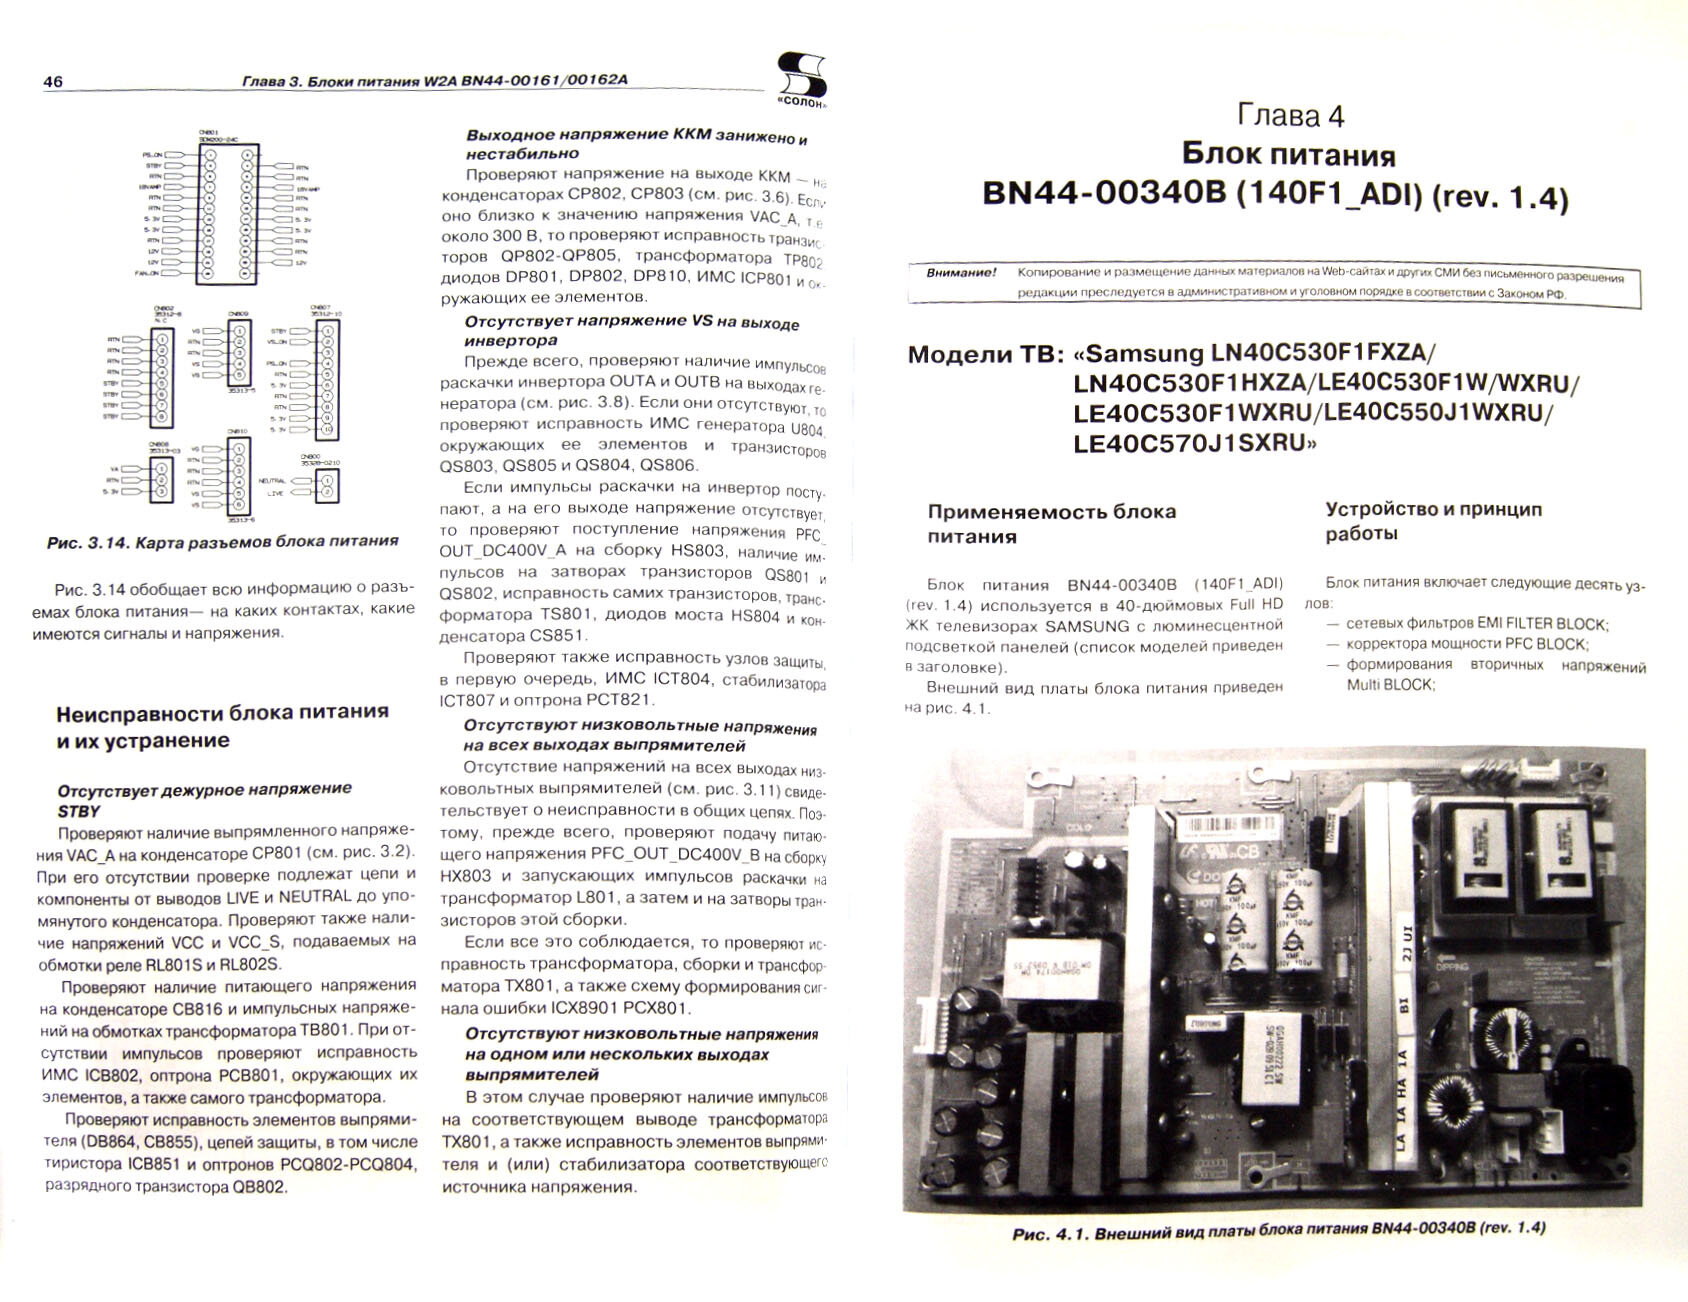 Диагностика и ремонт блоков питания ЖК и плазменных телевизоров SAMSUNG - фото №5